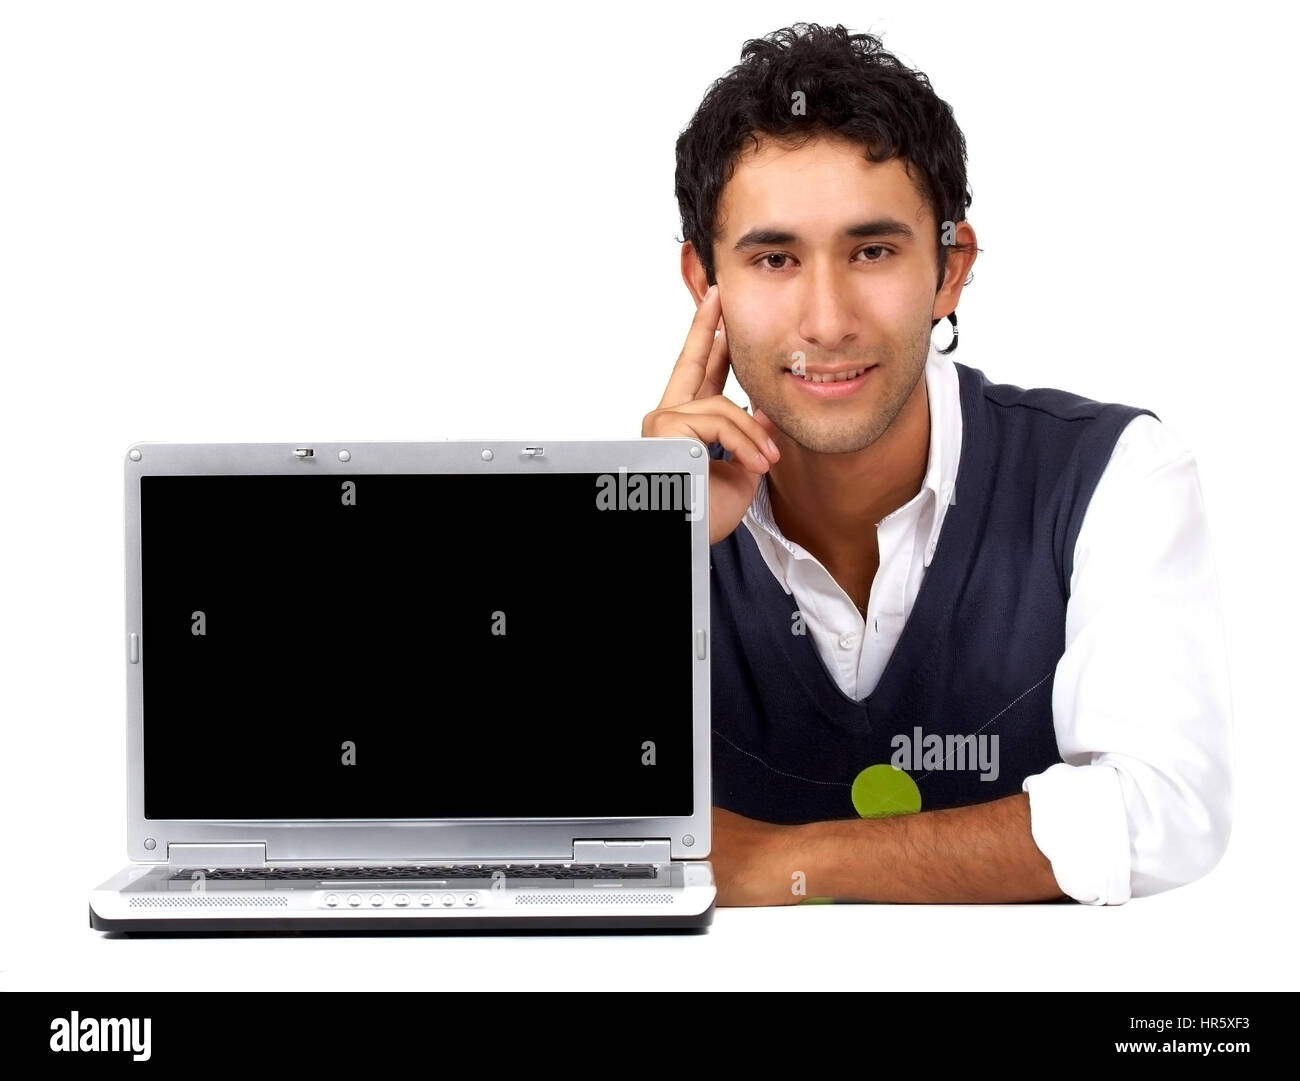 Homme avec un ordinateur portable - isolé sur fond blanc Banque D'Images